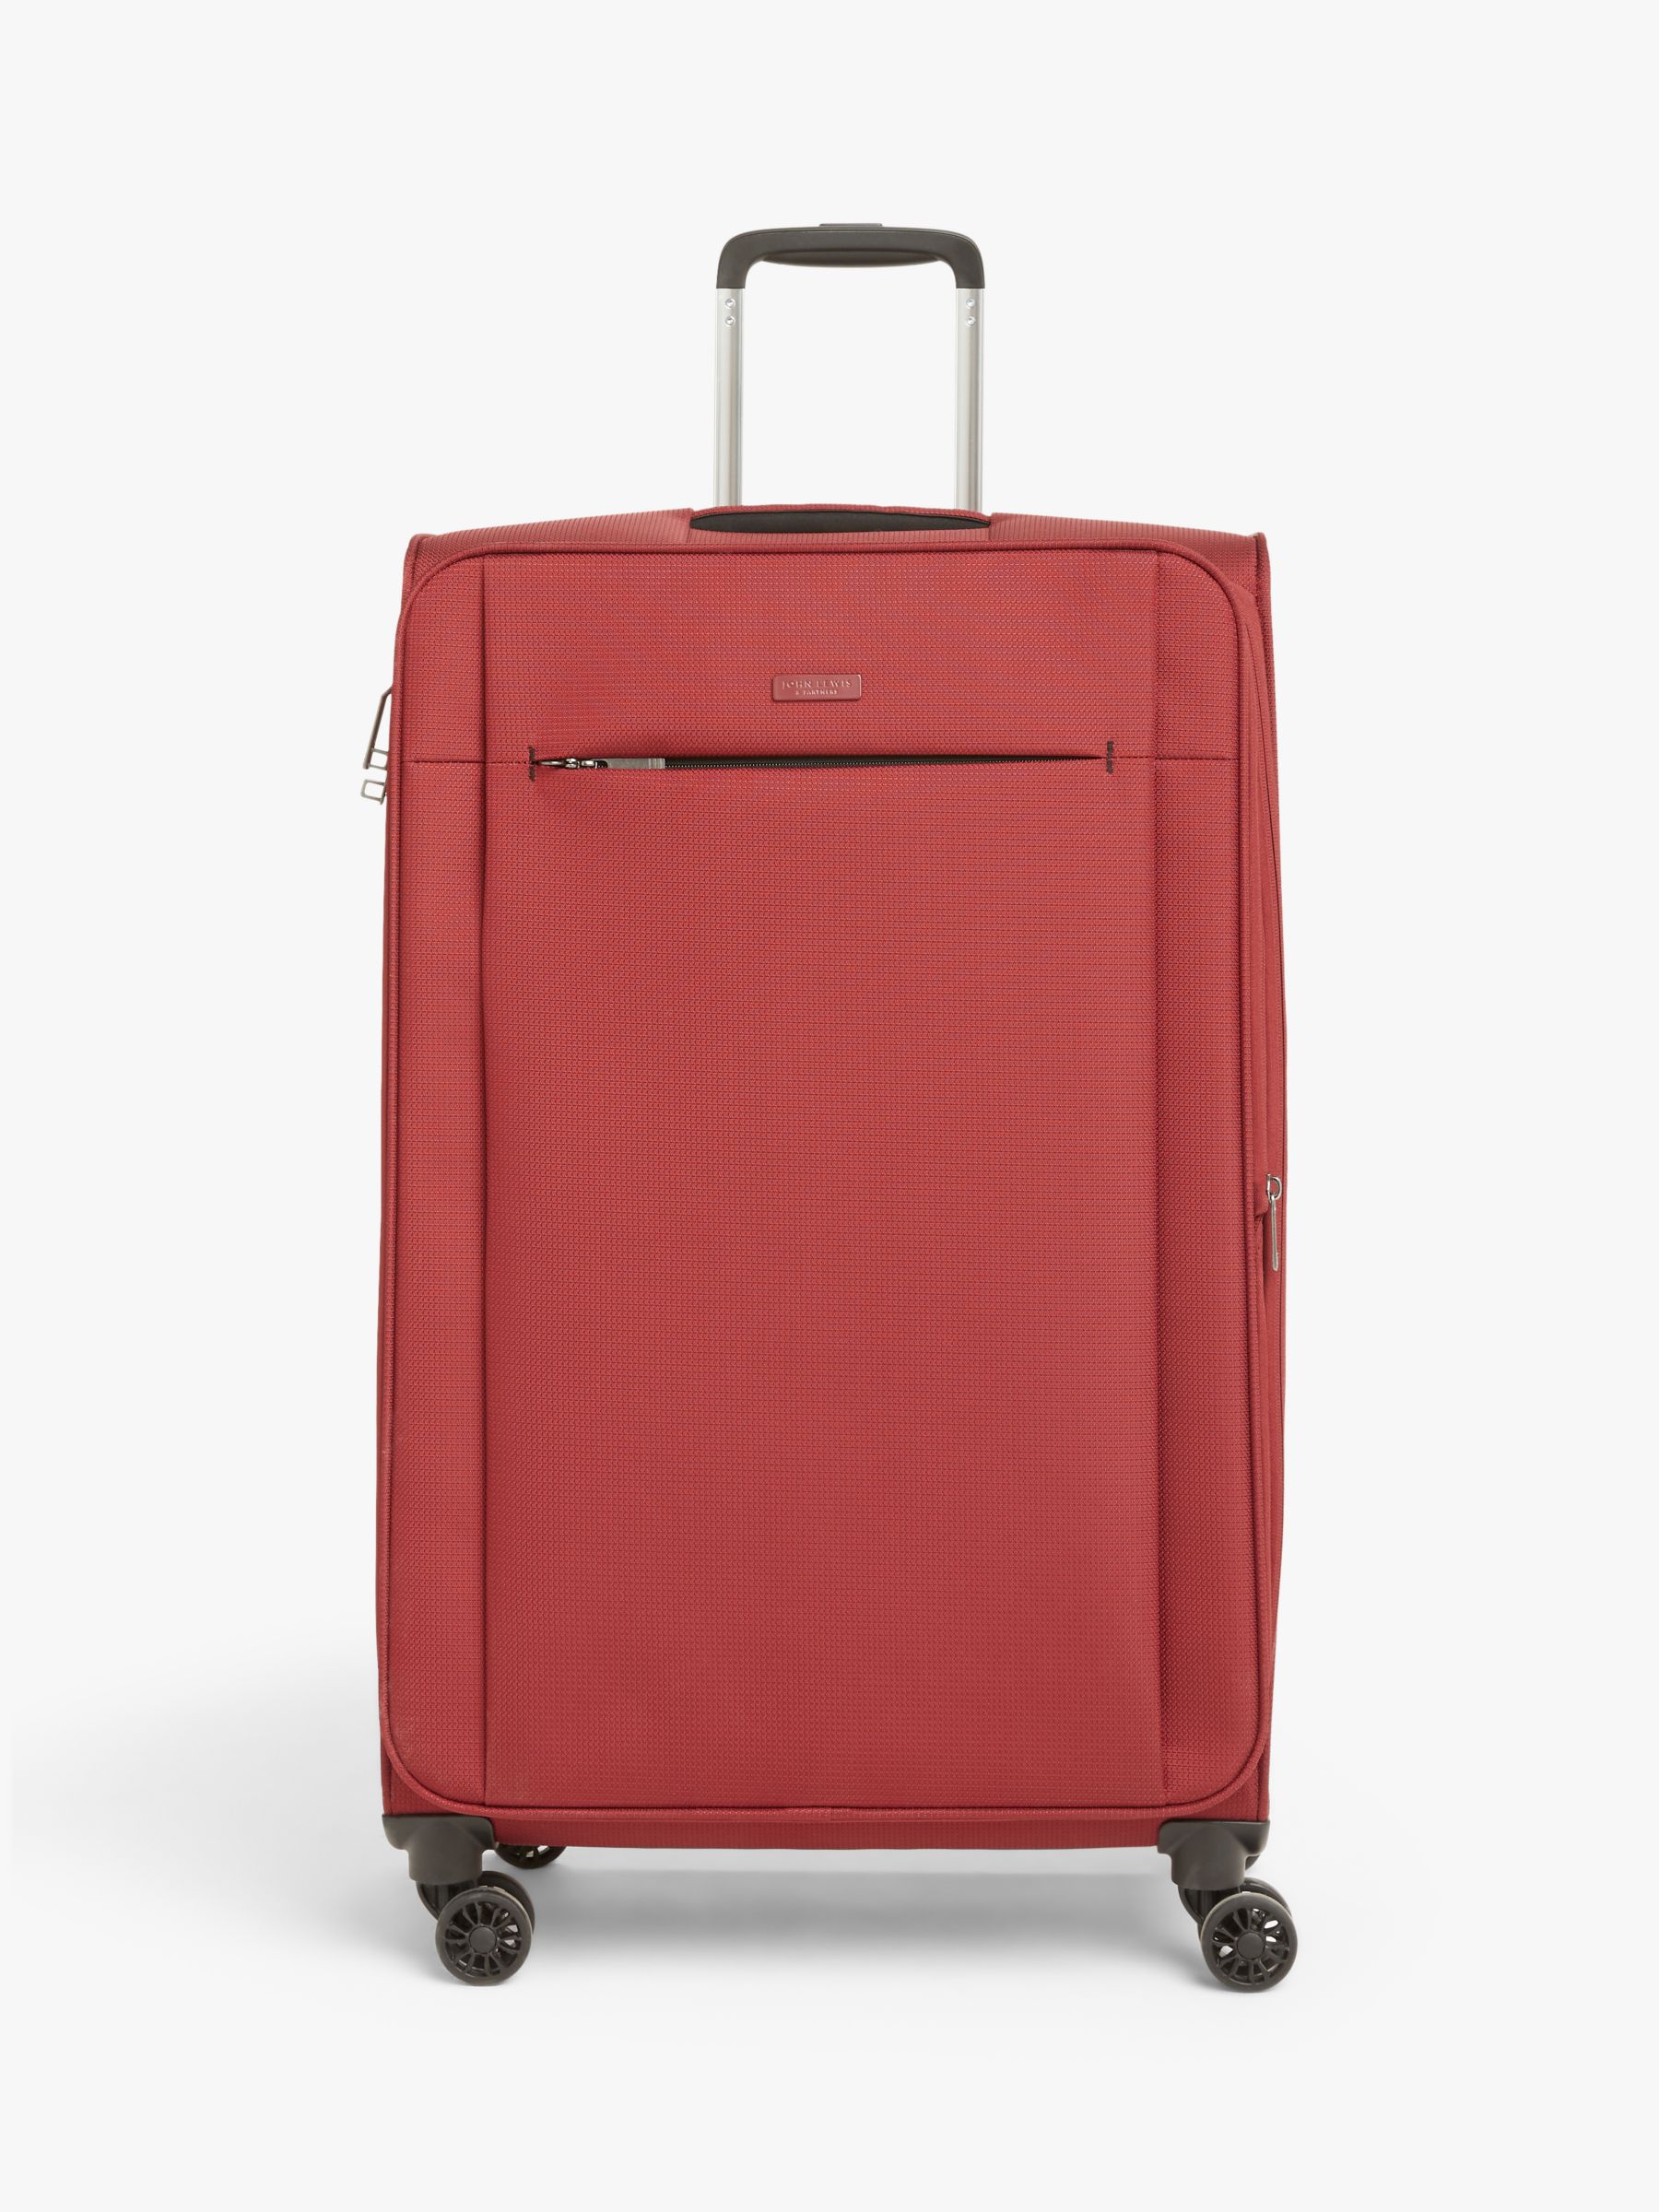 John Lewis & Partners Vienna 4-Wheel 76cm Lightweight Large Suitcase at John Lewis & Partners